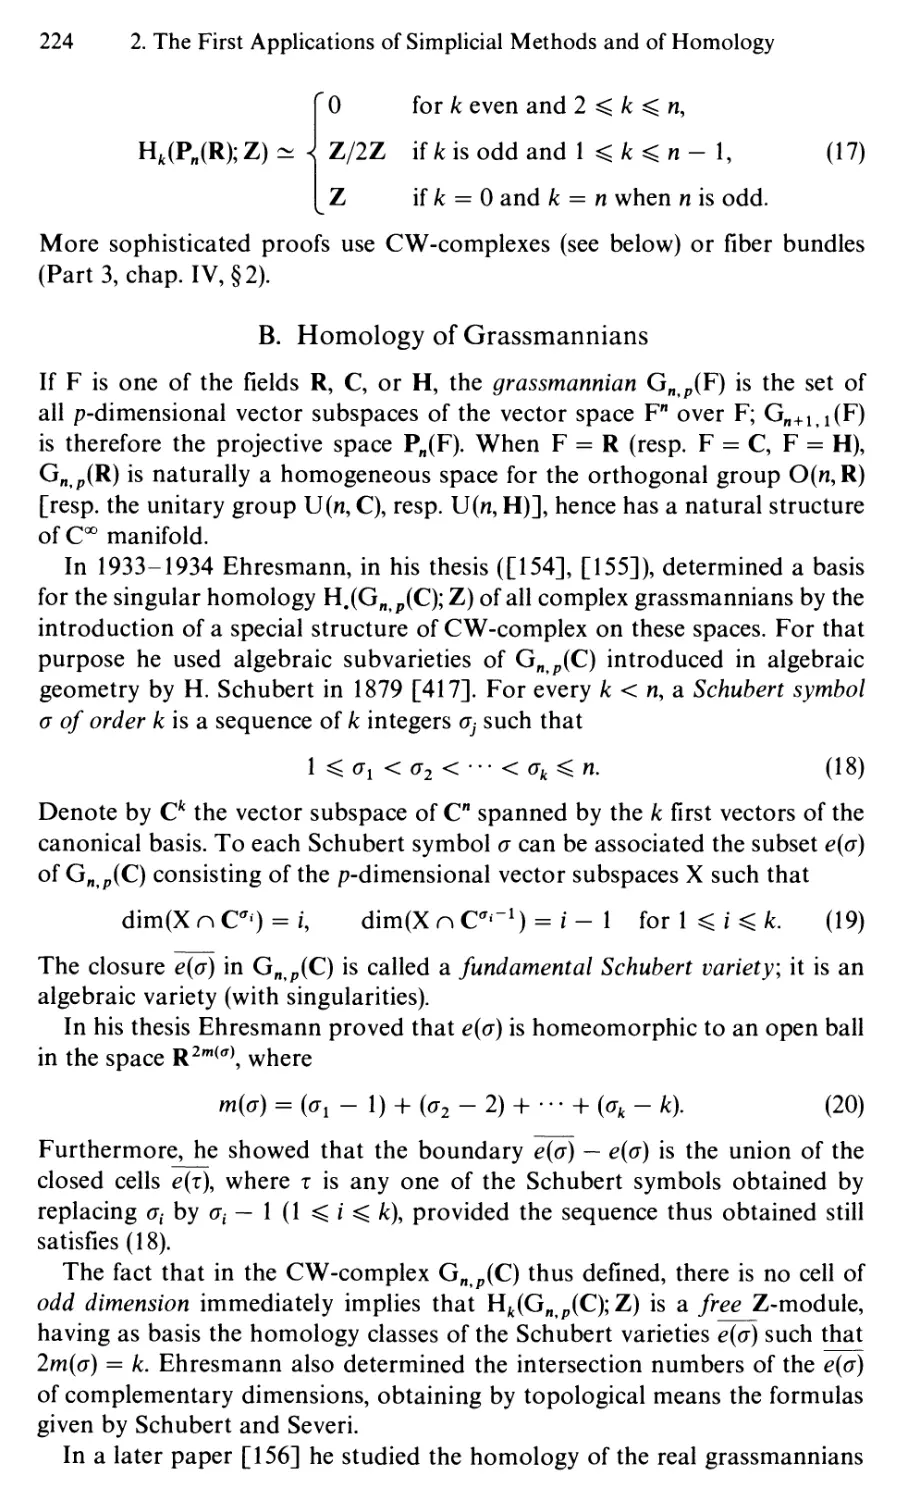 B. Homology of Grassmannians